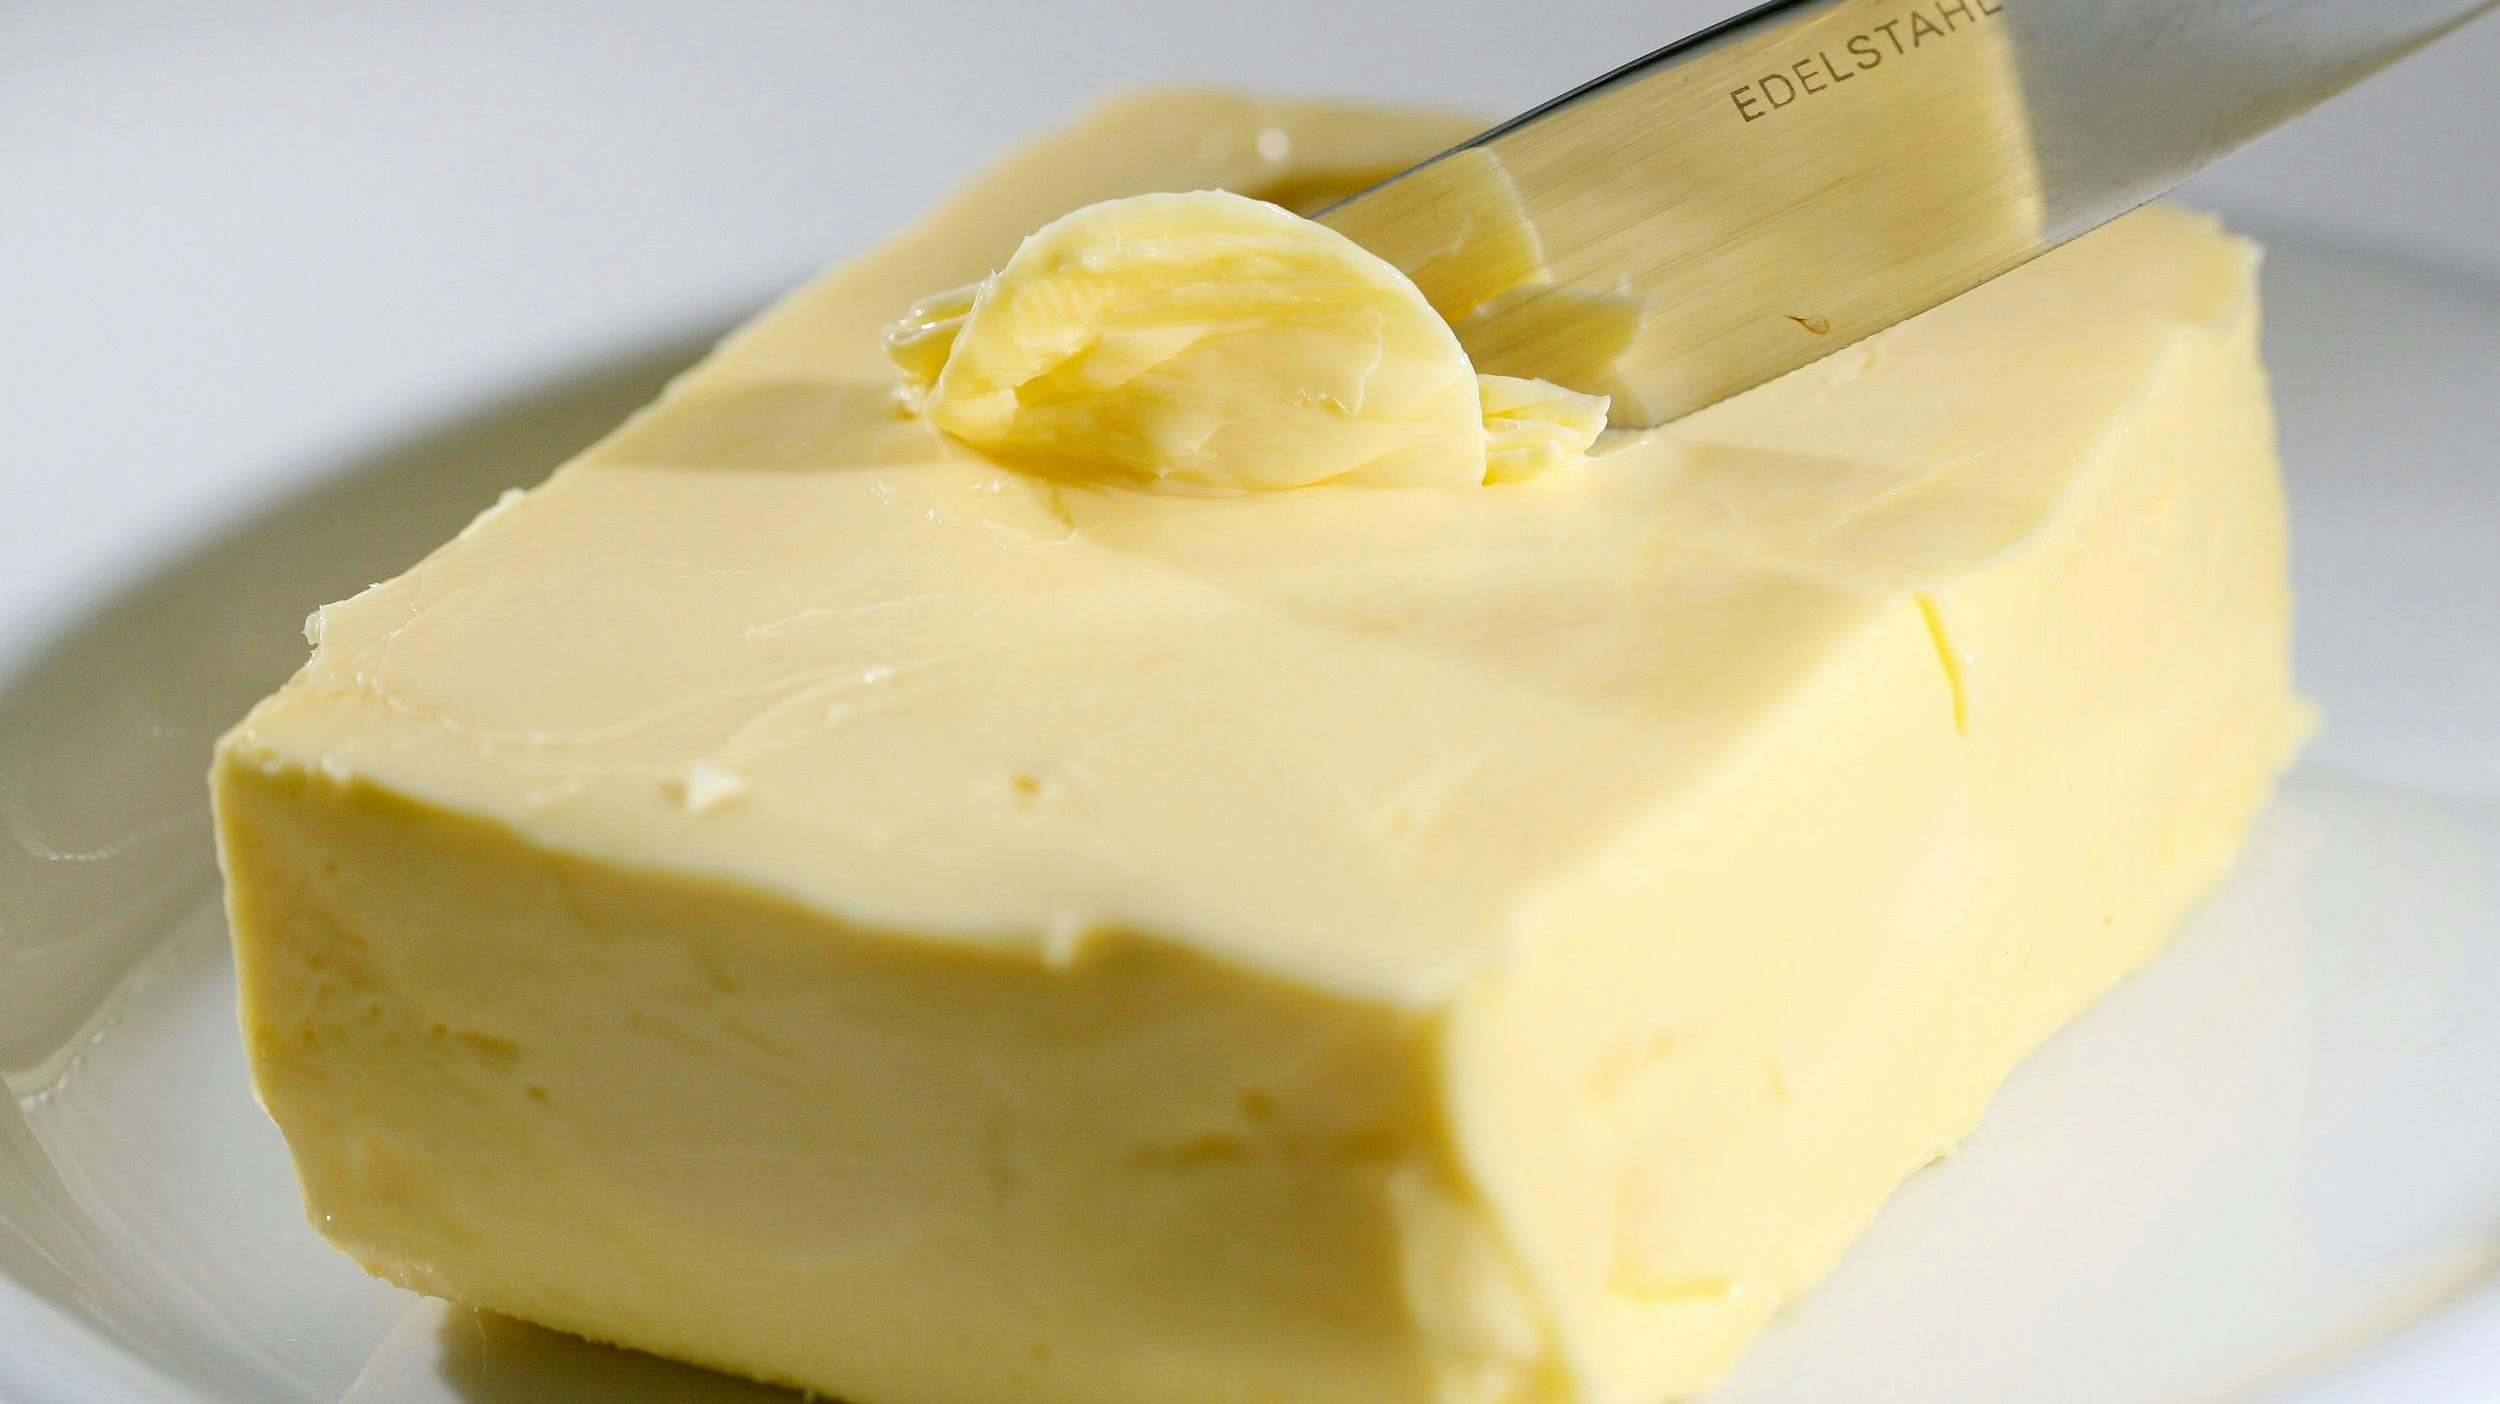 Deutlich günstiger: Der Buttereinkaufspreis ist um 56 Cent pro Kilo gefallen - zu Lasten der Milchbauern. Foto:dpa/Ebener